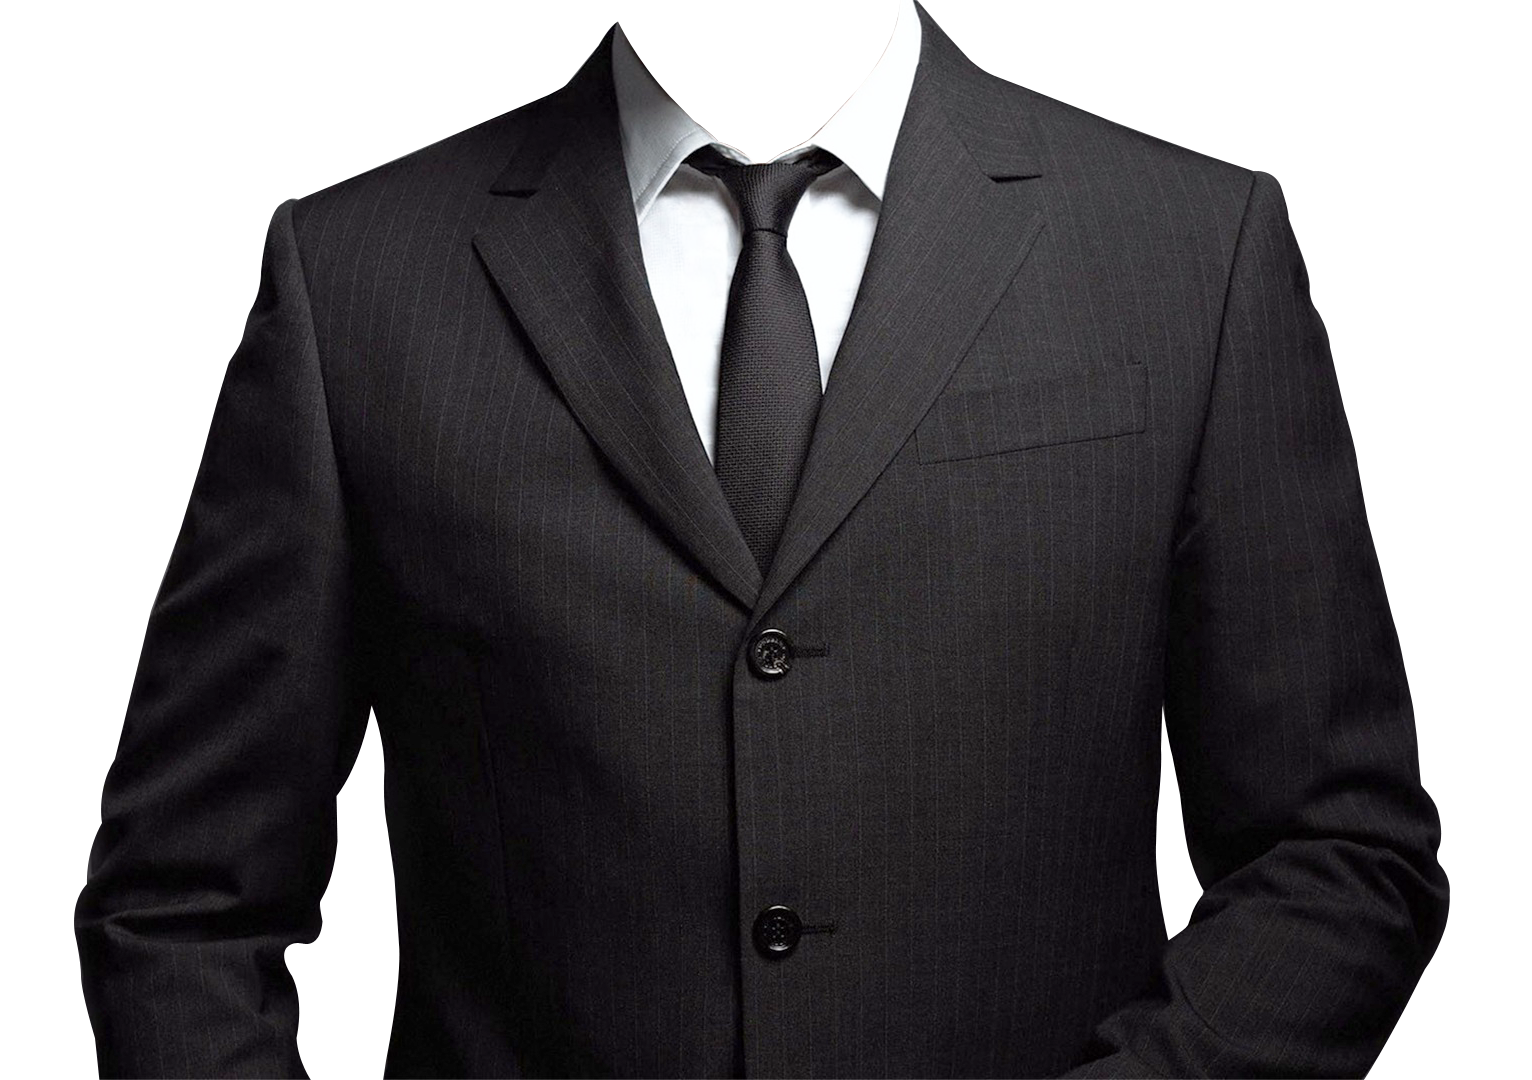 Suit Png Transparent Image - Blazer, Transparent background PNG HD thumbnail